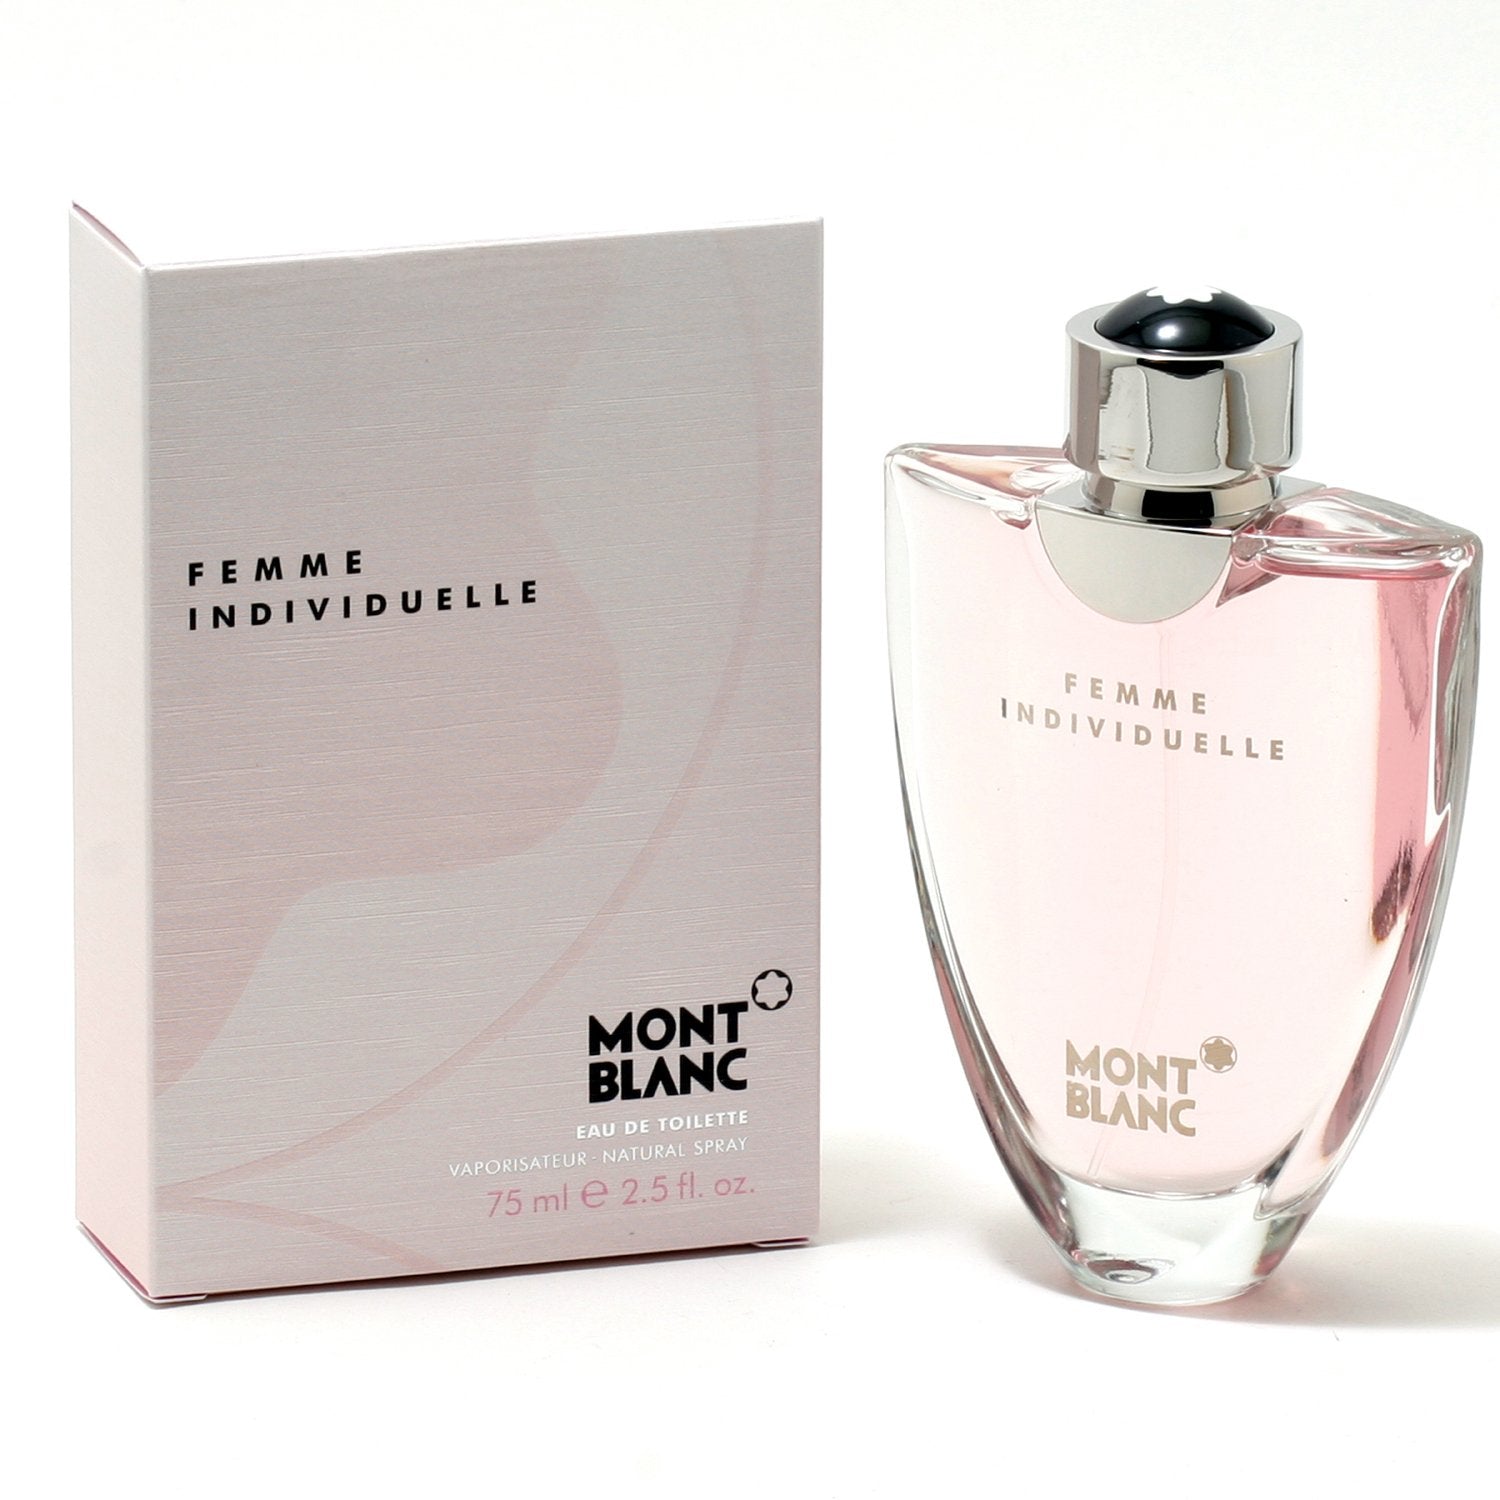 Perfume - INDIVIDUELLE FOR WOMEN BY MONT BLANC - EAU DE TOILETTE SPRAY, 2.5 OZ